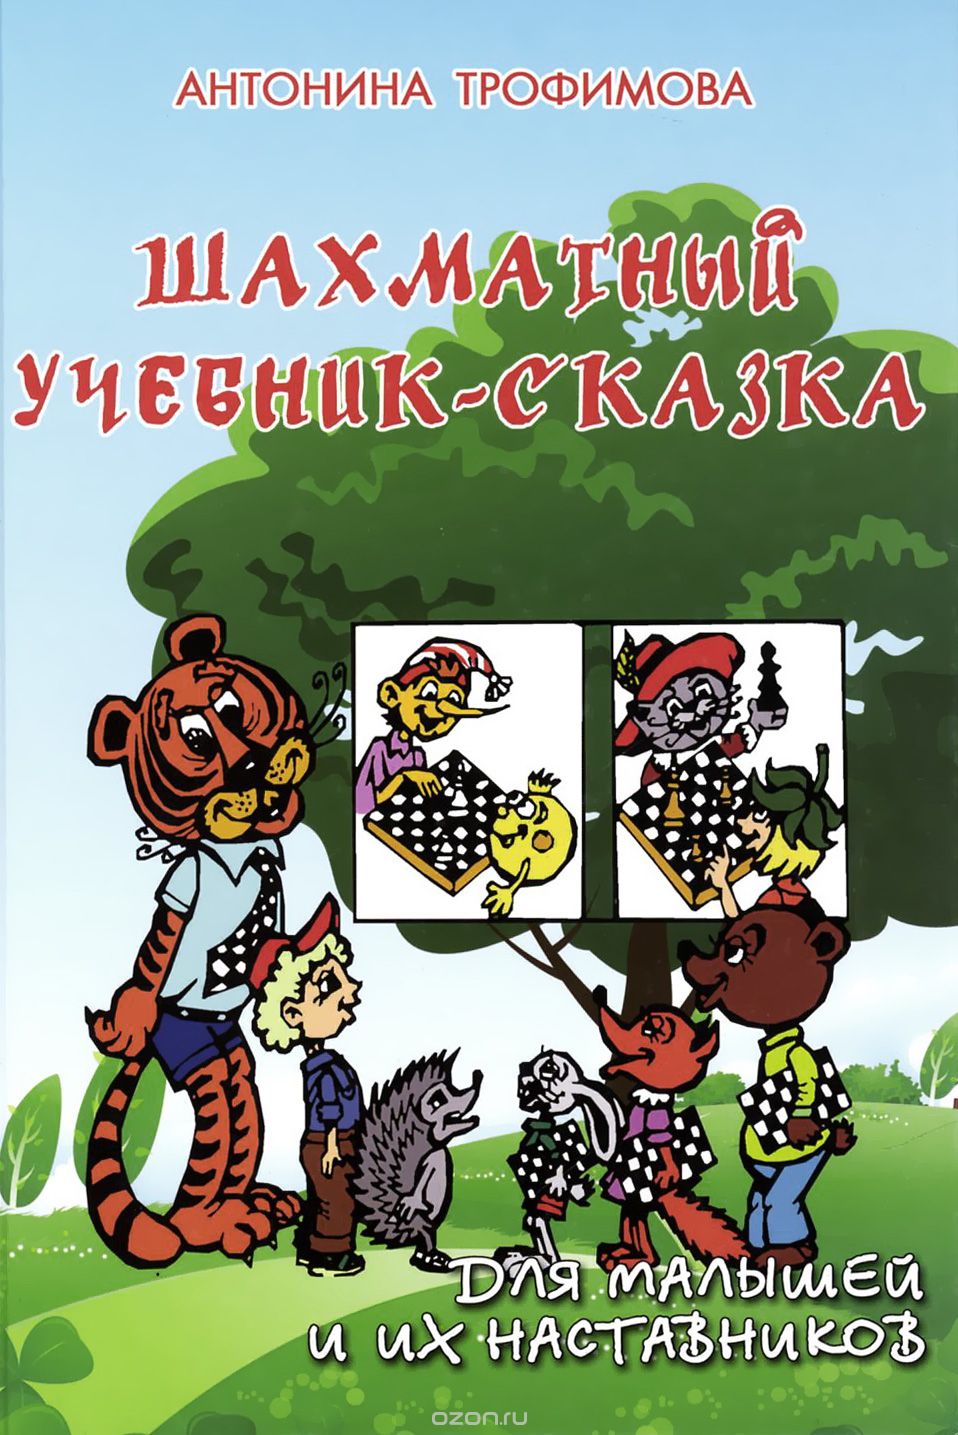 Скачать книгу "Шахматный учебник-сказка для малышей и их наставников, А. С. Трофимова"